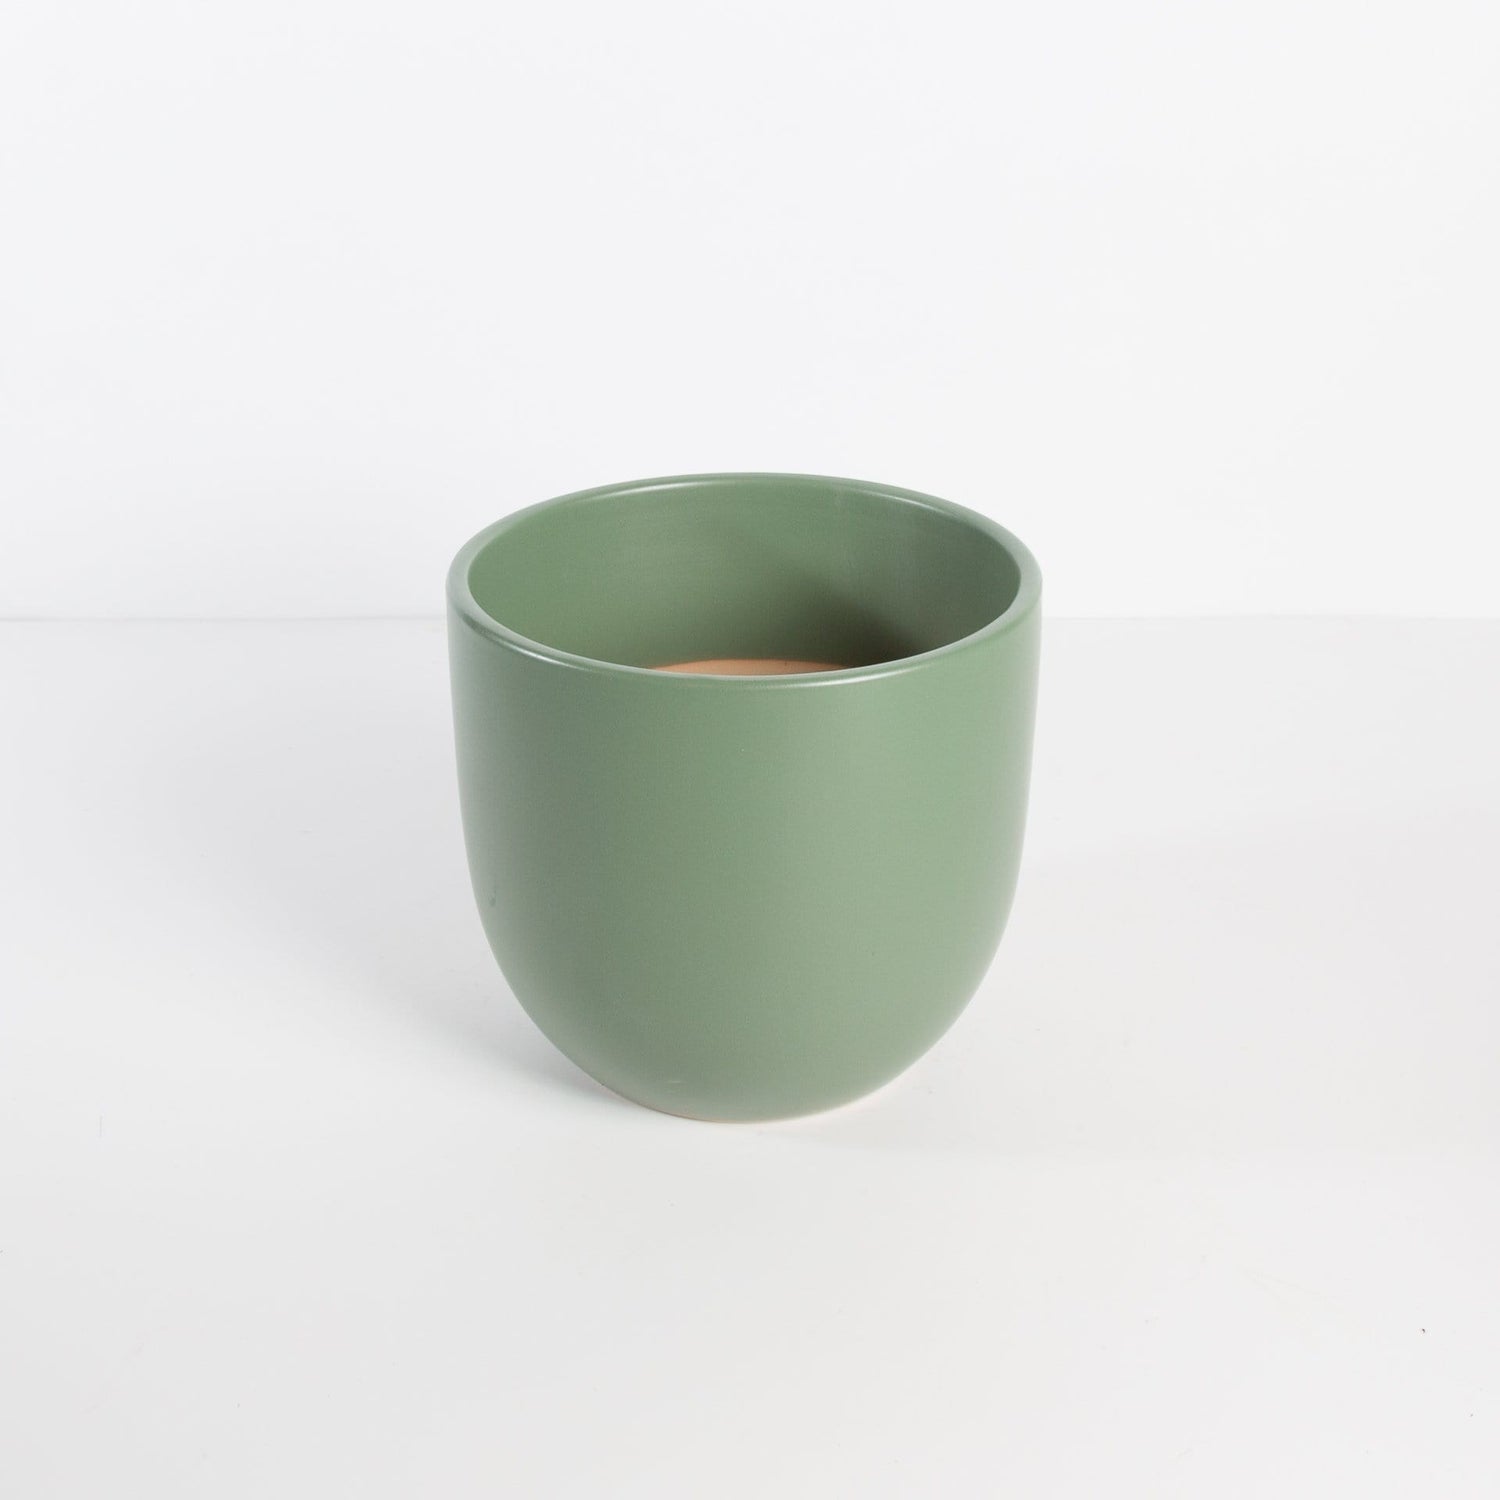 Peach & Pebble Pot 7" / Green Curve Ceramic Pot